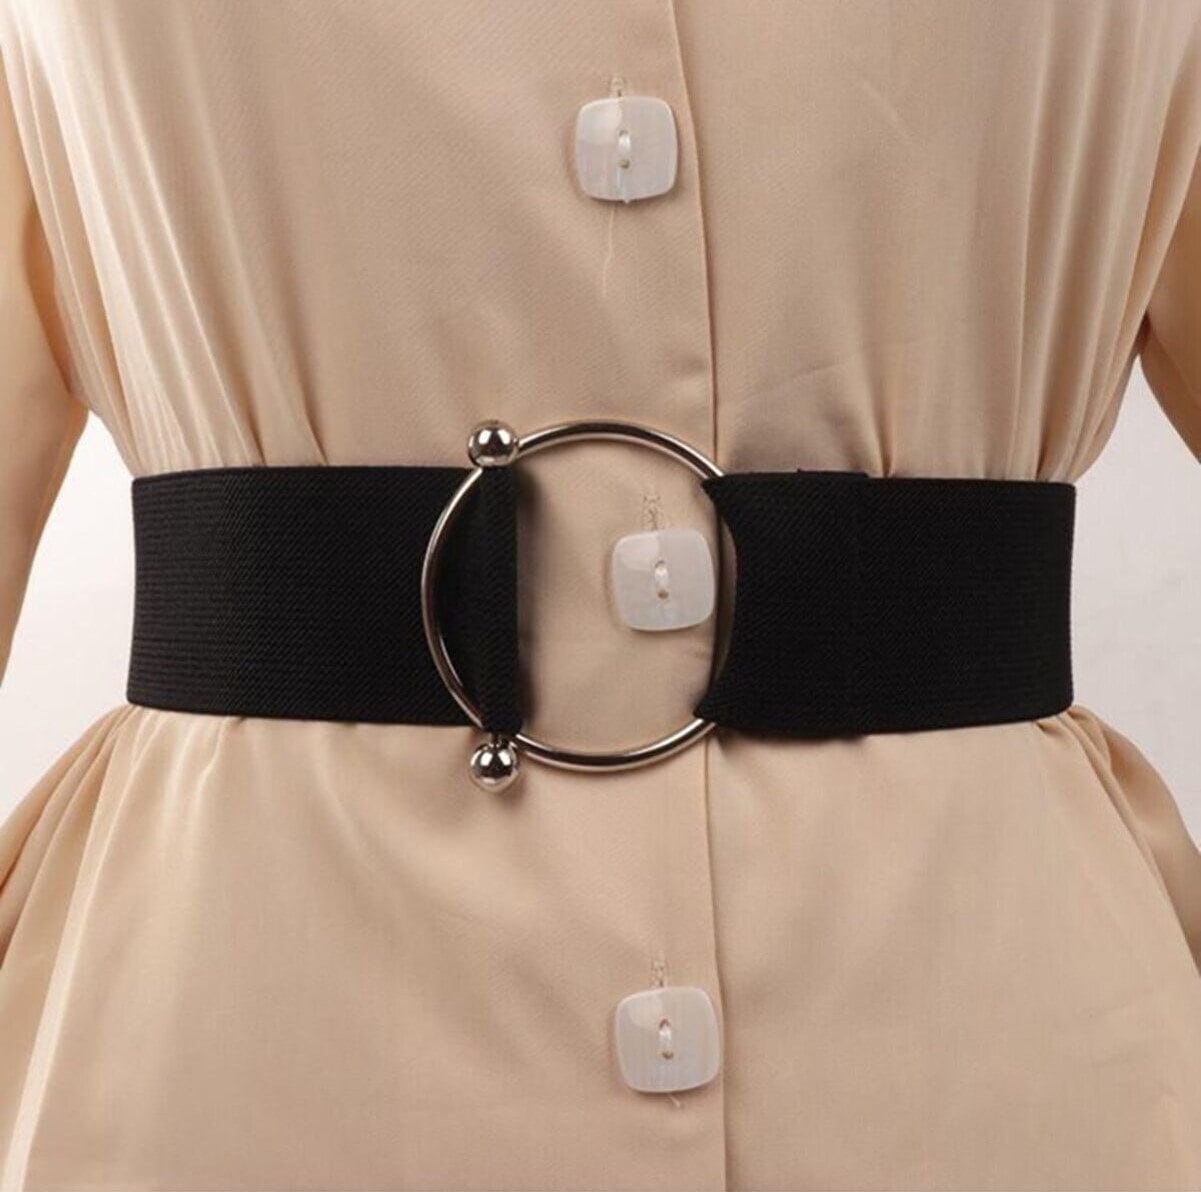 ZIBUYU Elastic Stretchable Ladies Waist Belt with Interlocking